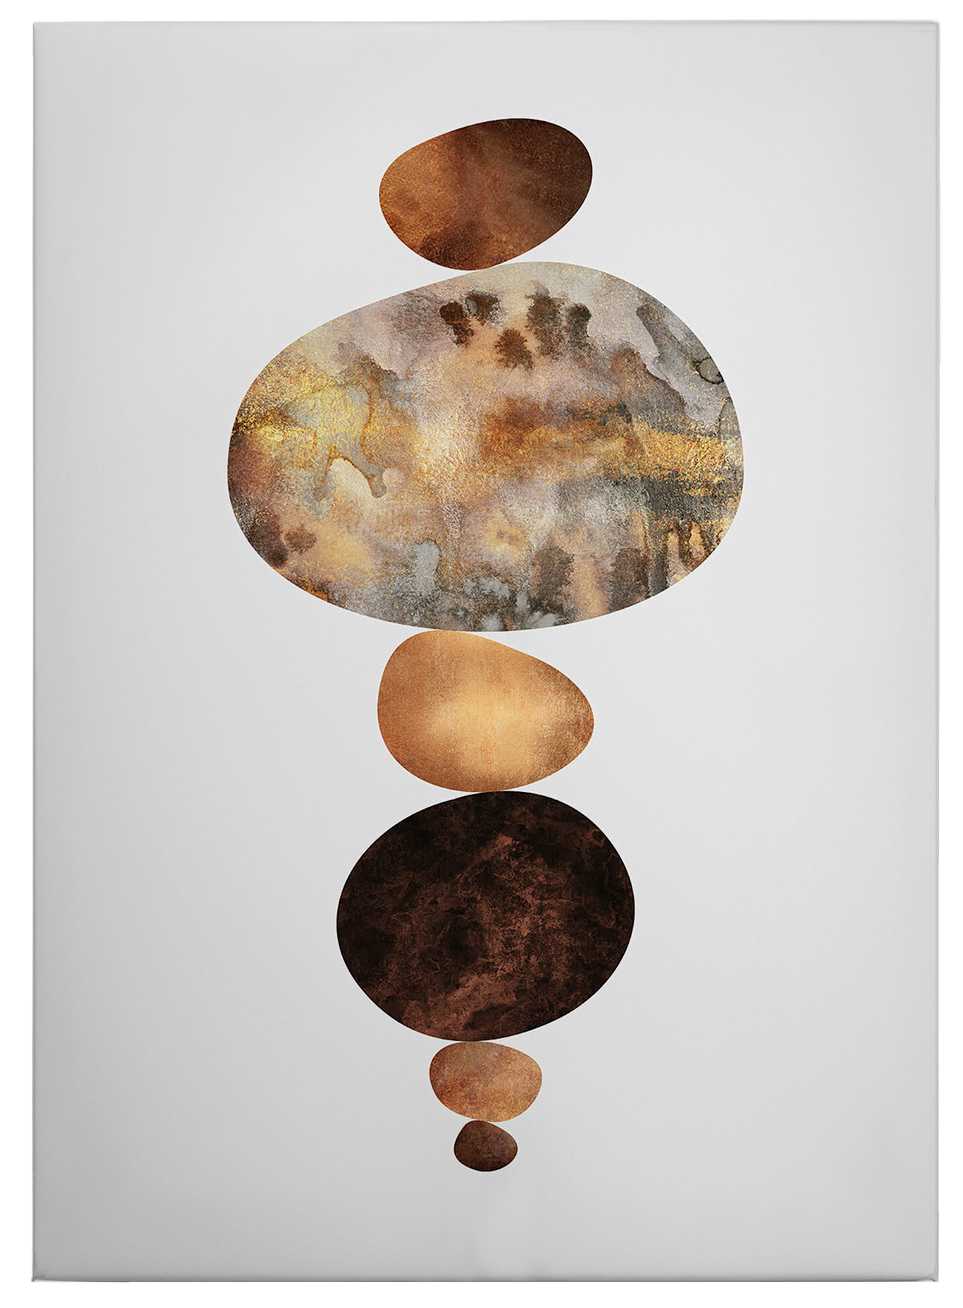             Tableau sur toile "Équilibre" de Fredriksson - 0,50 m x 0,70 m
        